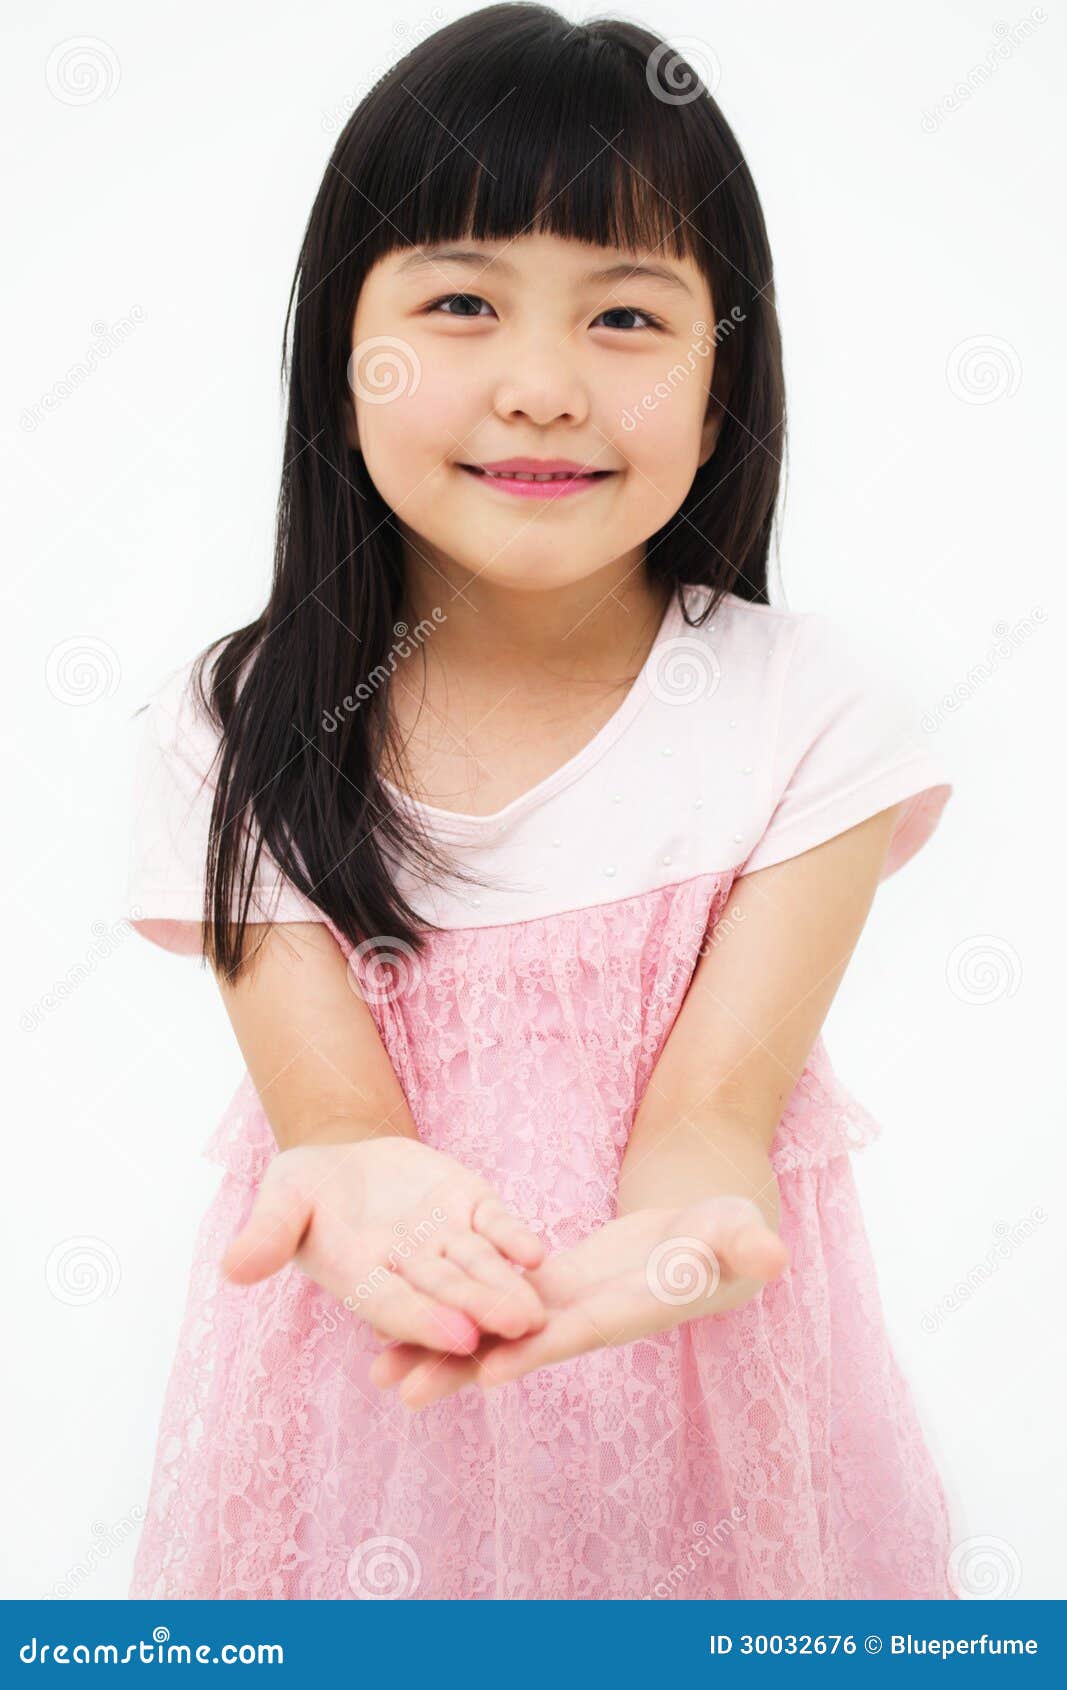 фото маленькой девочки азиатки фото 27